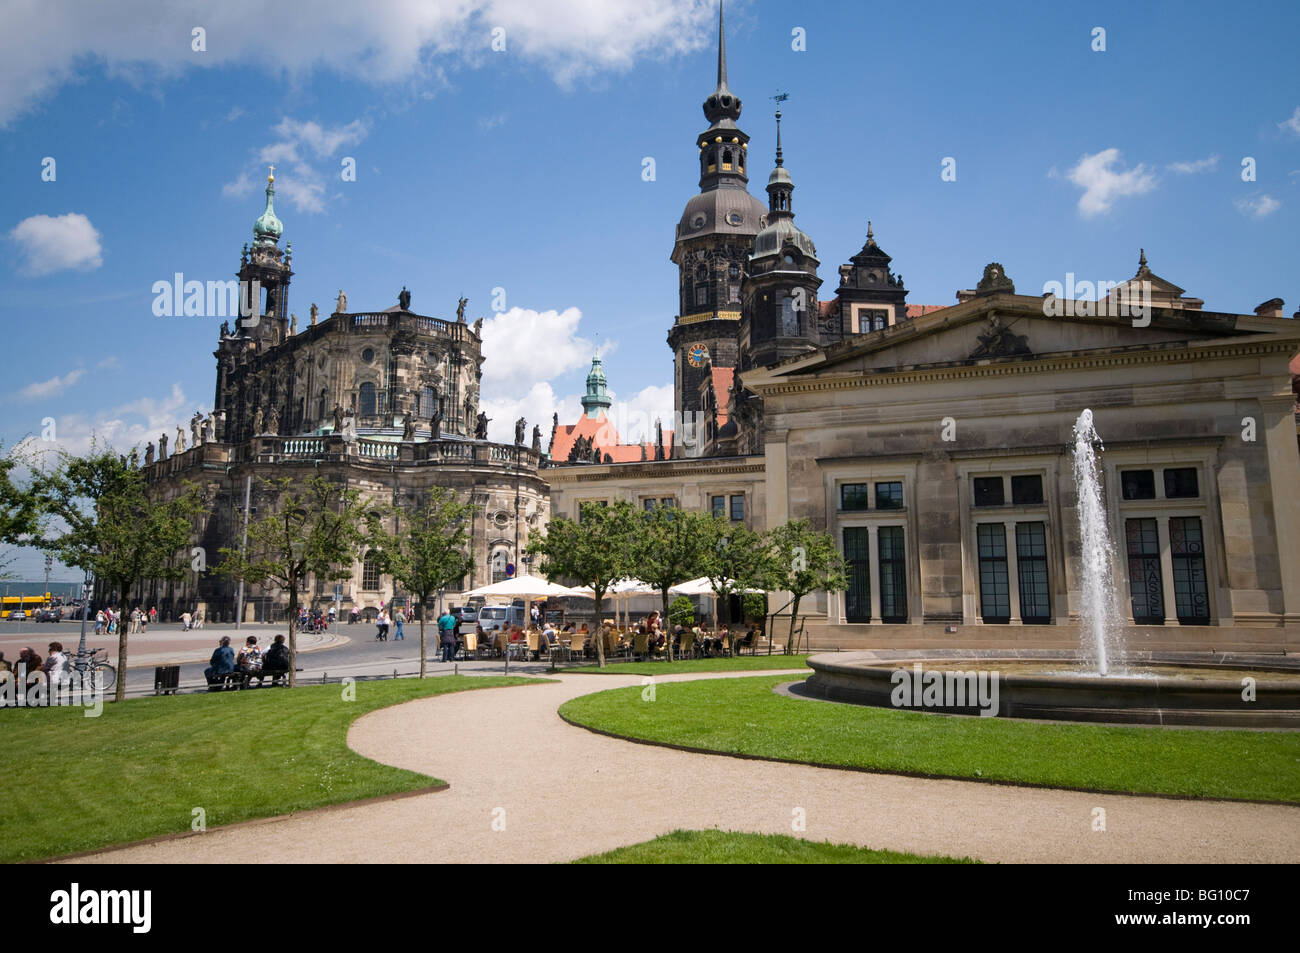 La Cour Palace, Dresde, Saxe, Allemagne, Europe Banque D'Images